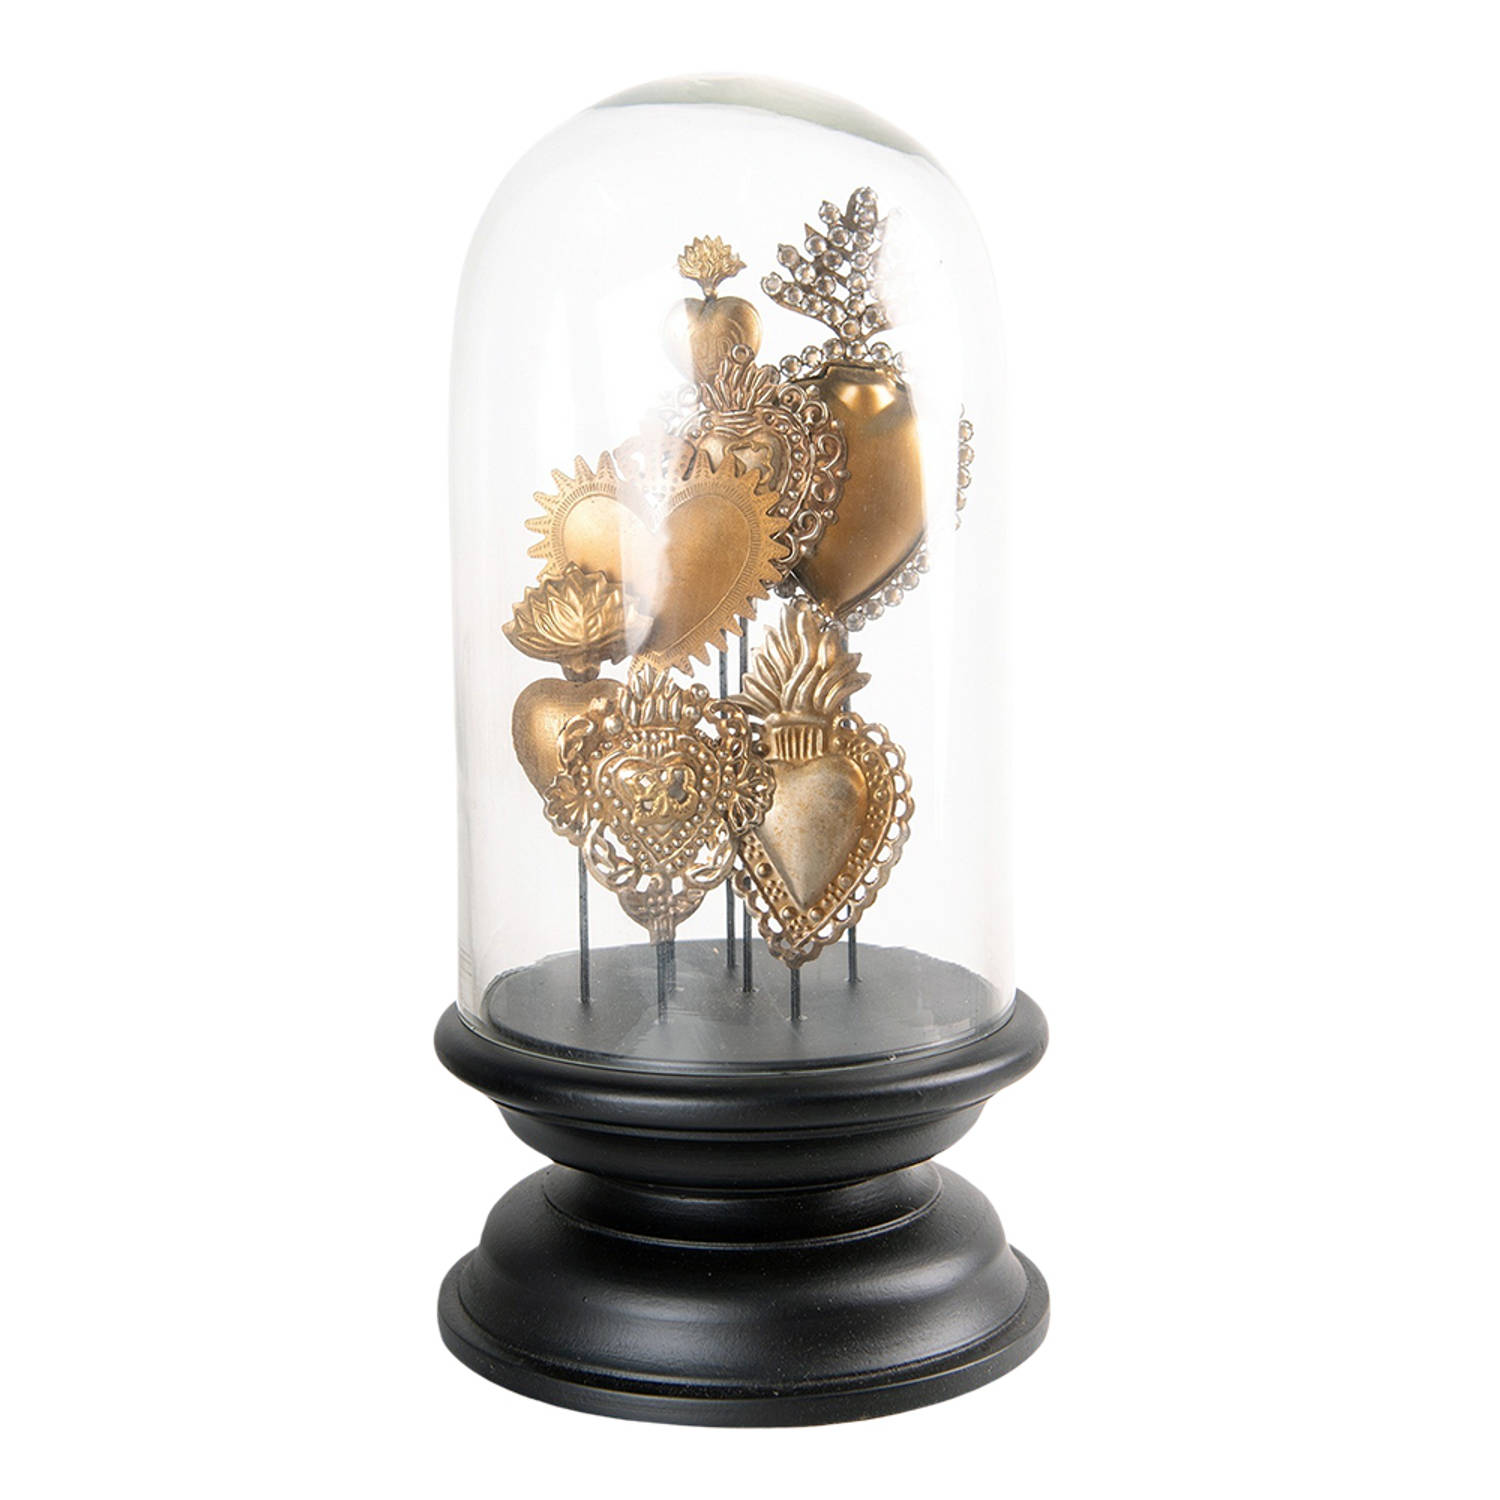 HAES DECO - Decoratieve glazen stolp met goudkleurige hartjes en zwart houten voet, diameter 19 cm en hoogte 39 cm - ST65175HS